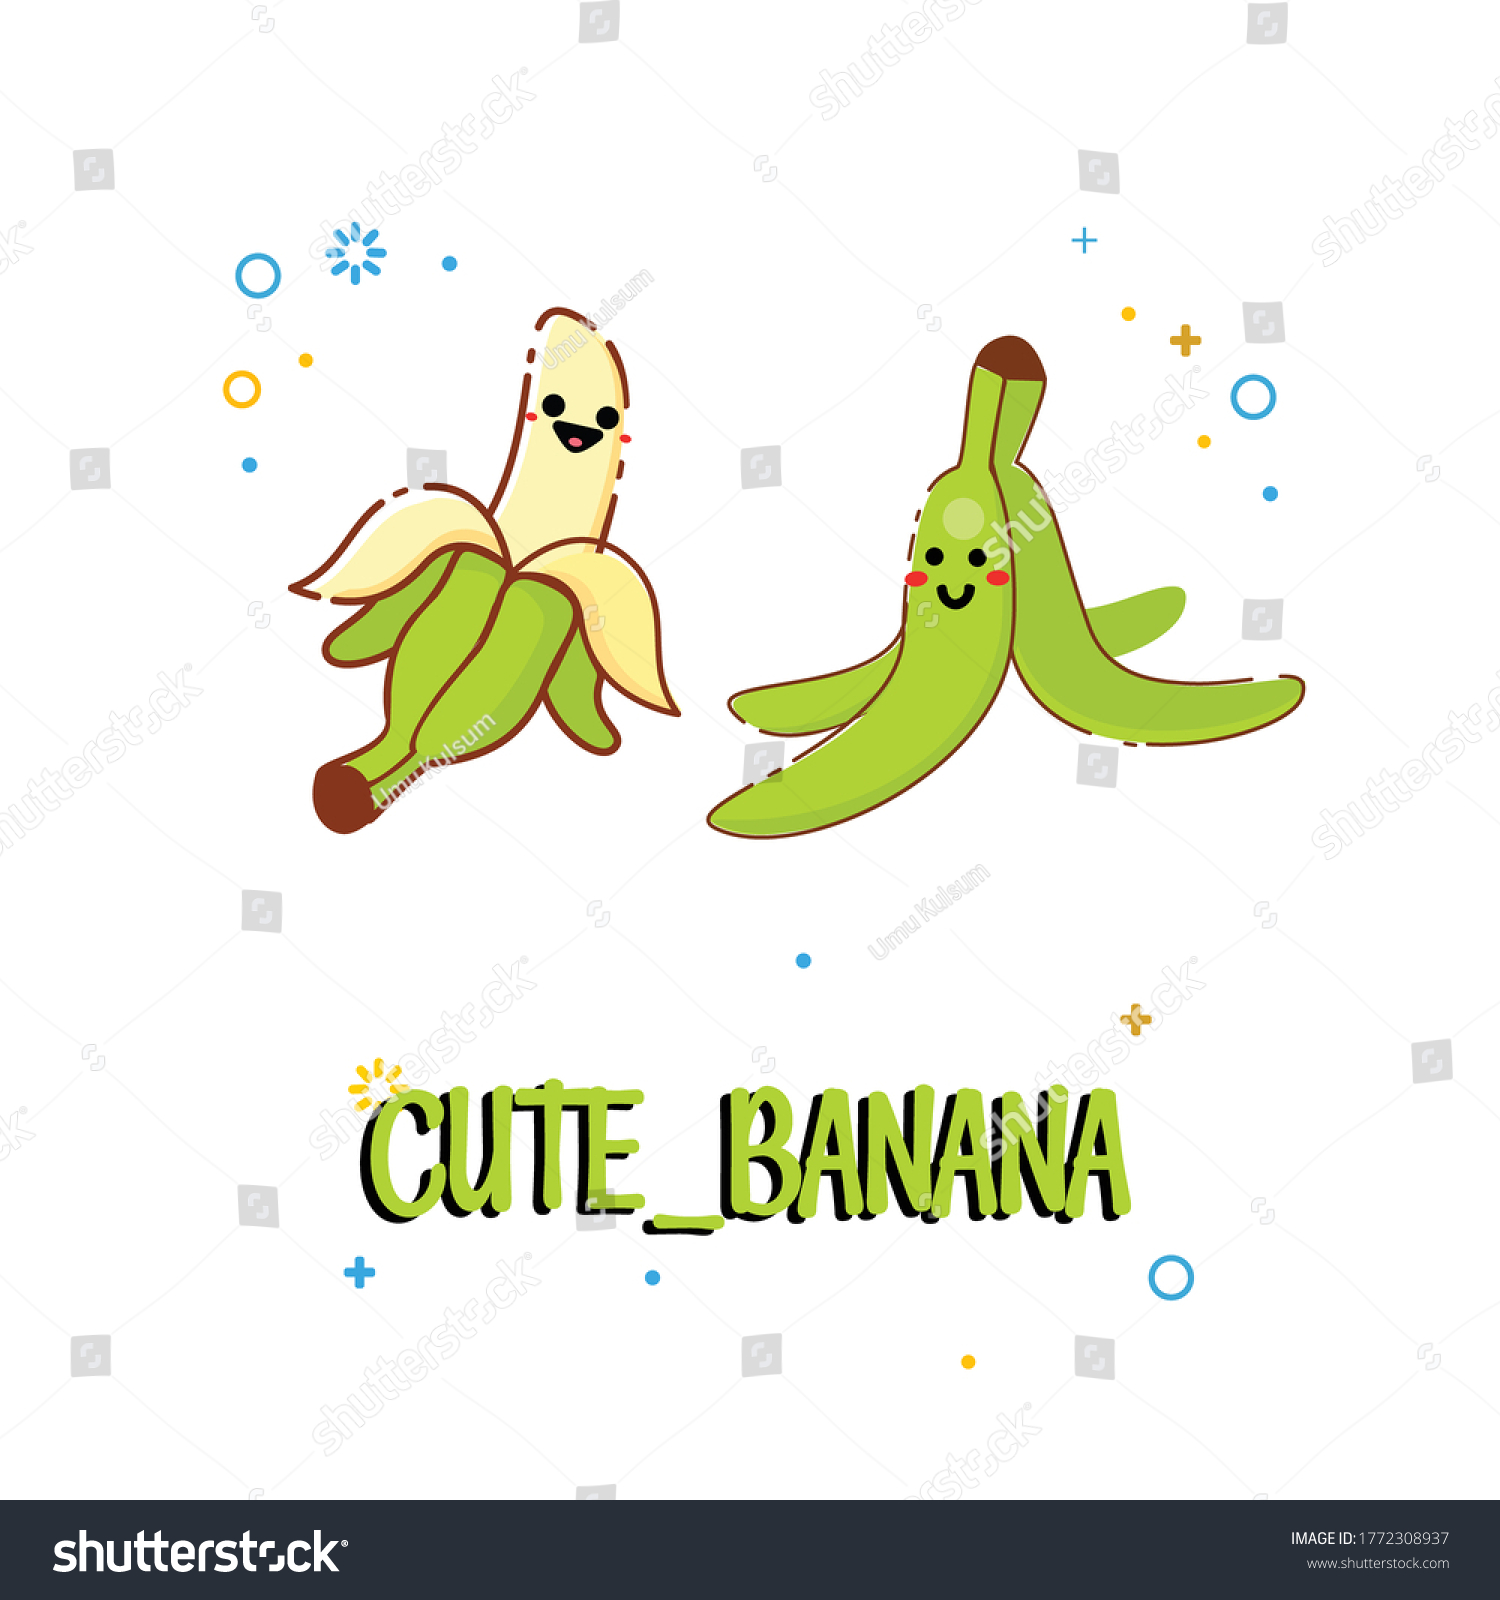 バナナのベクターイラスト 絵文字の入ったかわいいバナナ バナナの漫画の画像セット バナナの皮をむいて地面にむく イラストコレクションのベクター画像クリップアート バナナの緑色 のベクター画像素材 ロイヤリティフリー